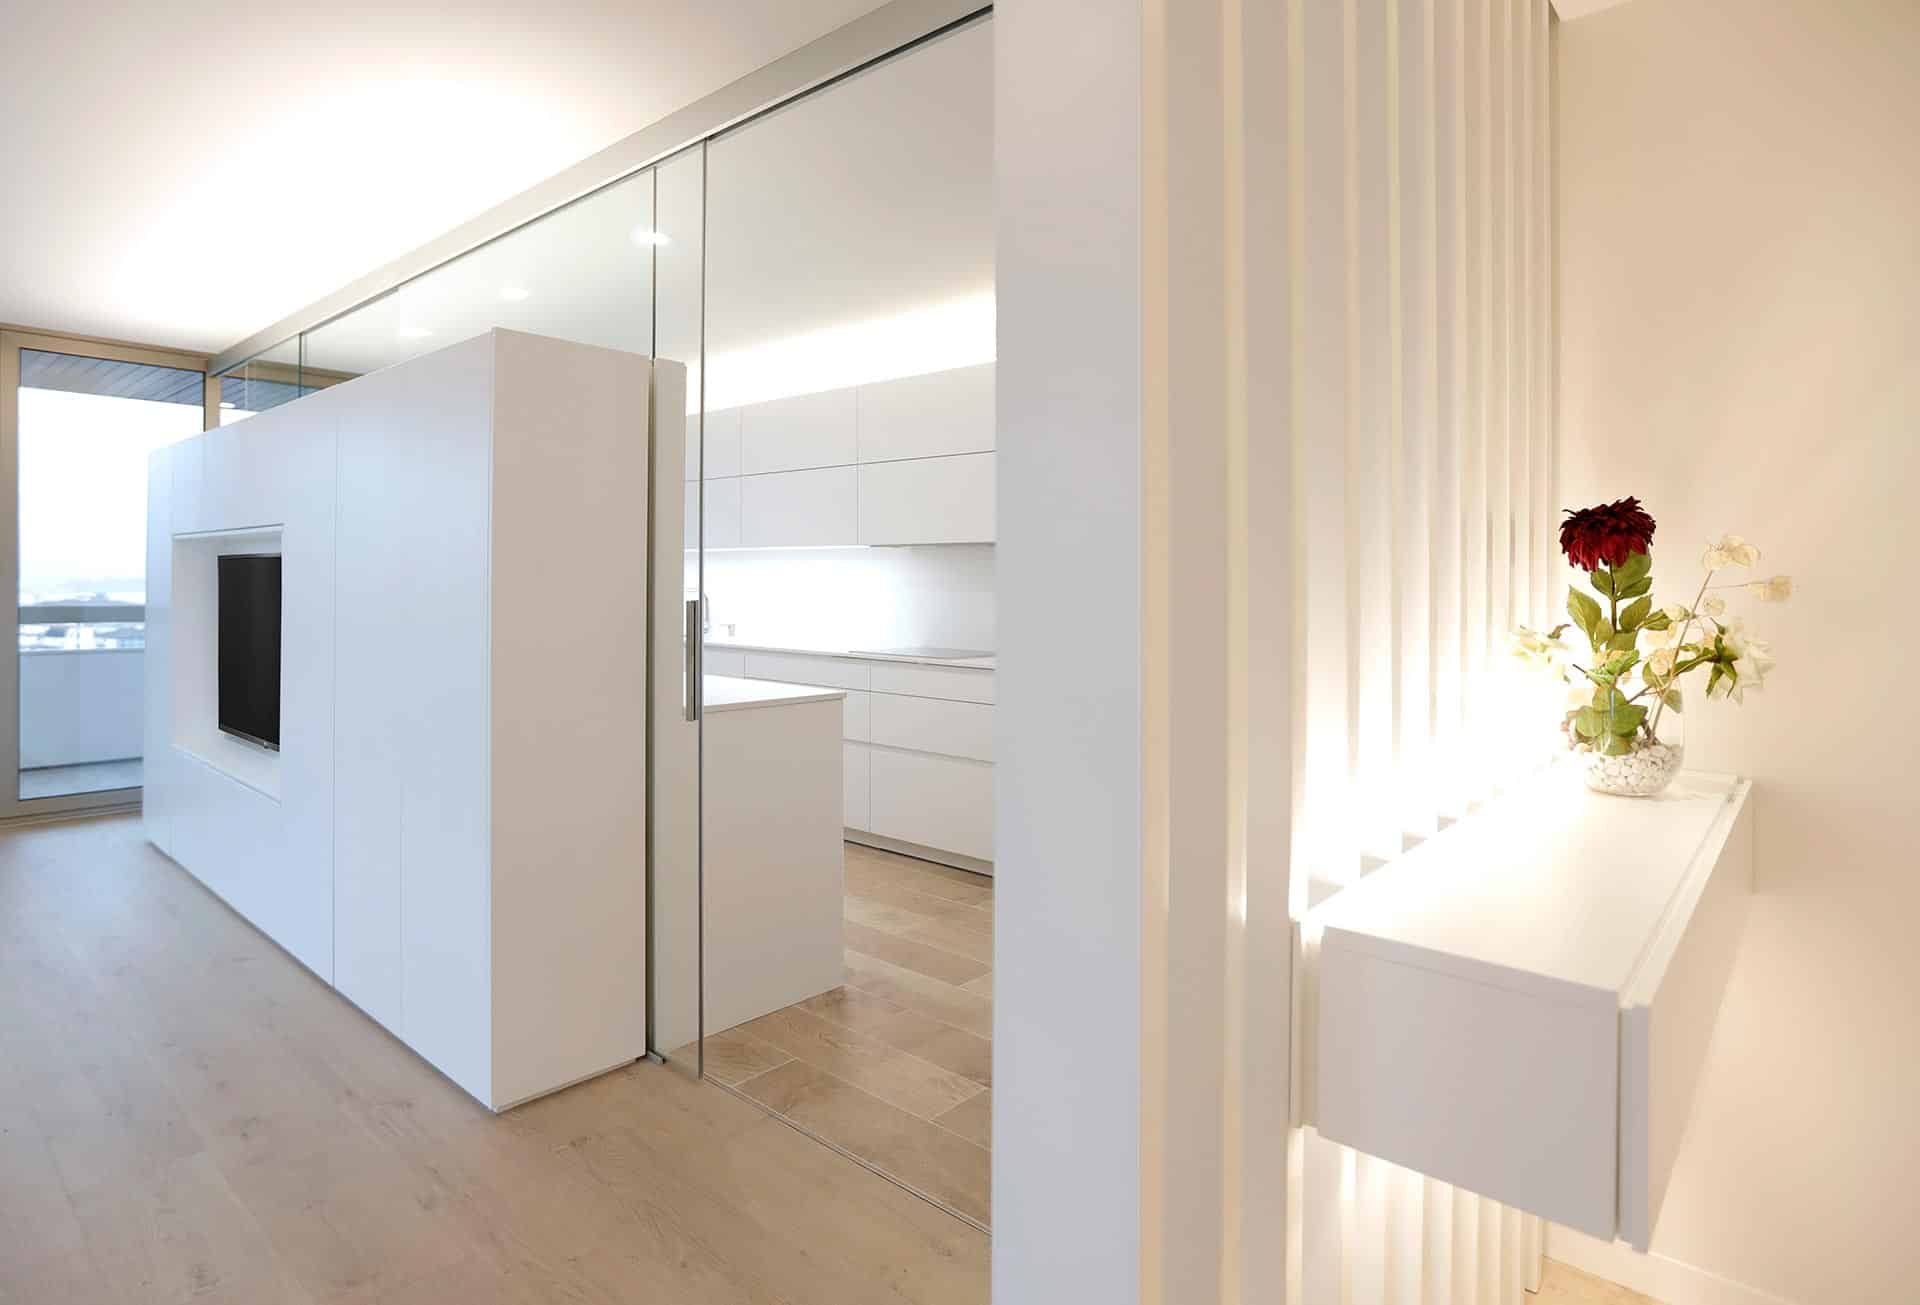 Vestíbulo y cocina en vivienda diseñada por Moah Arquitectos en Santander